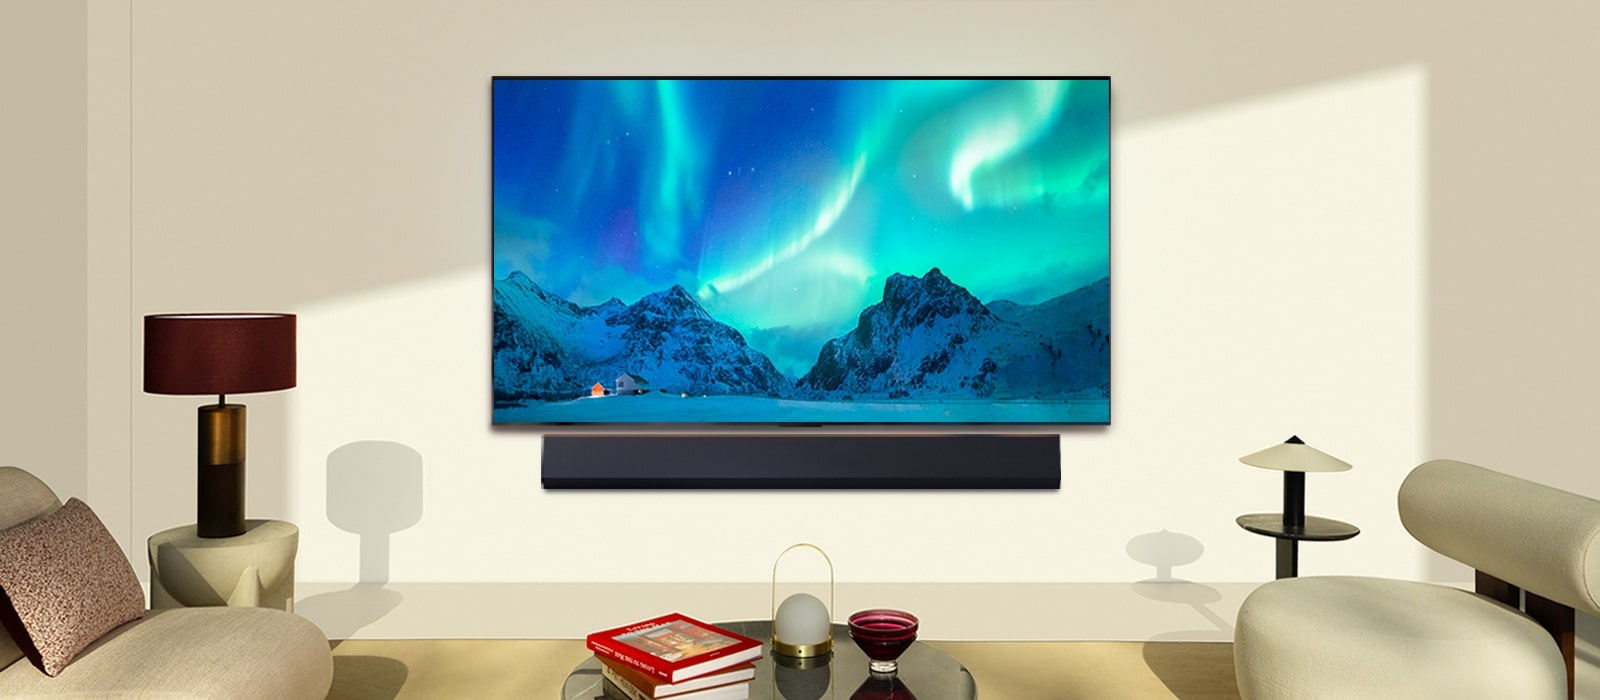 LG OLED TV والسماعات المنفصلة LG Soundbar في غرفة معيشة عصرية خلال النهار. صورة الشفق القطبي تظهر على الشاشة بمستويات السطوع المثالية.